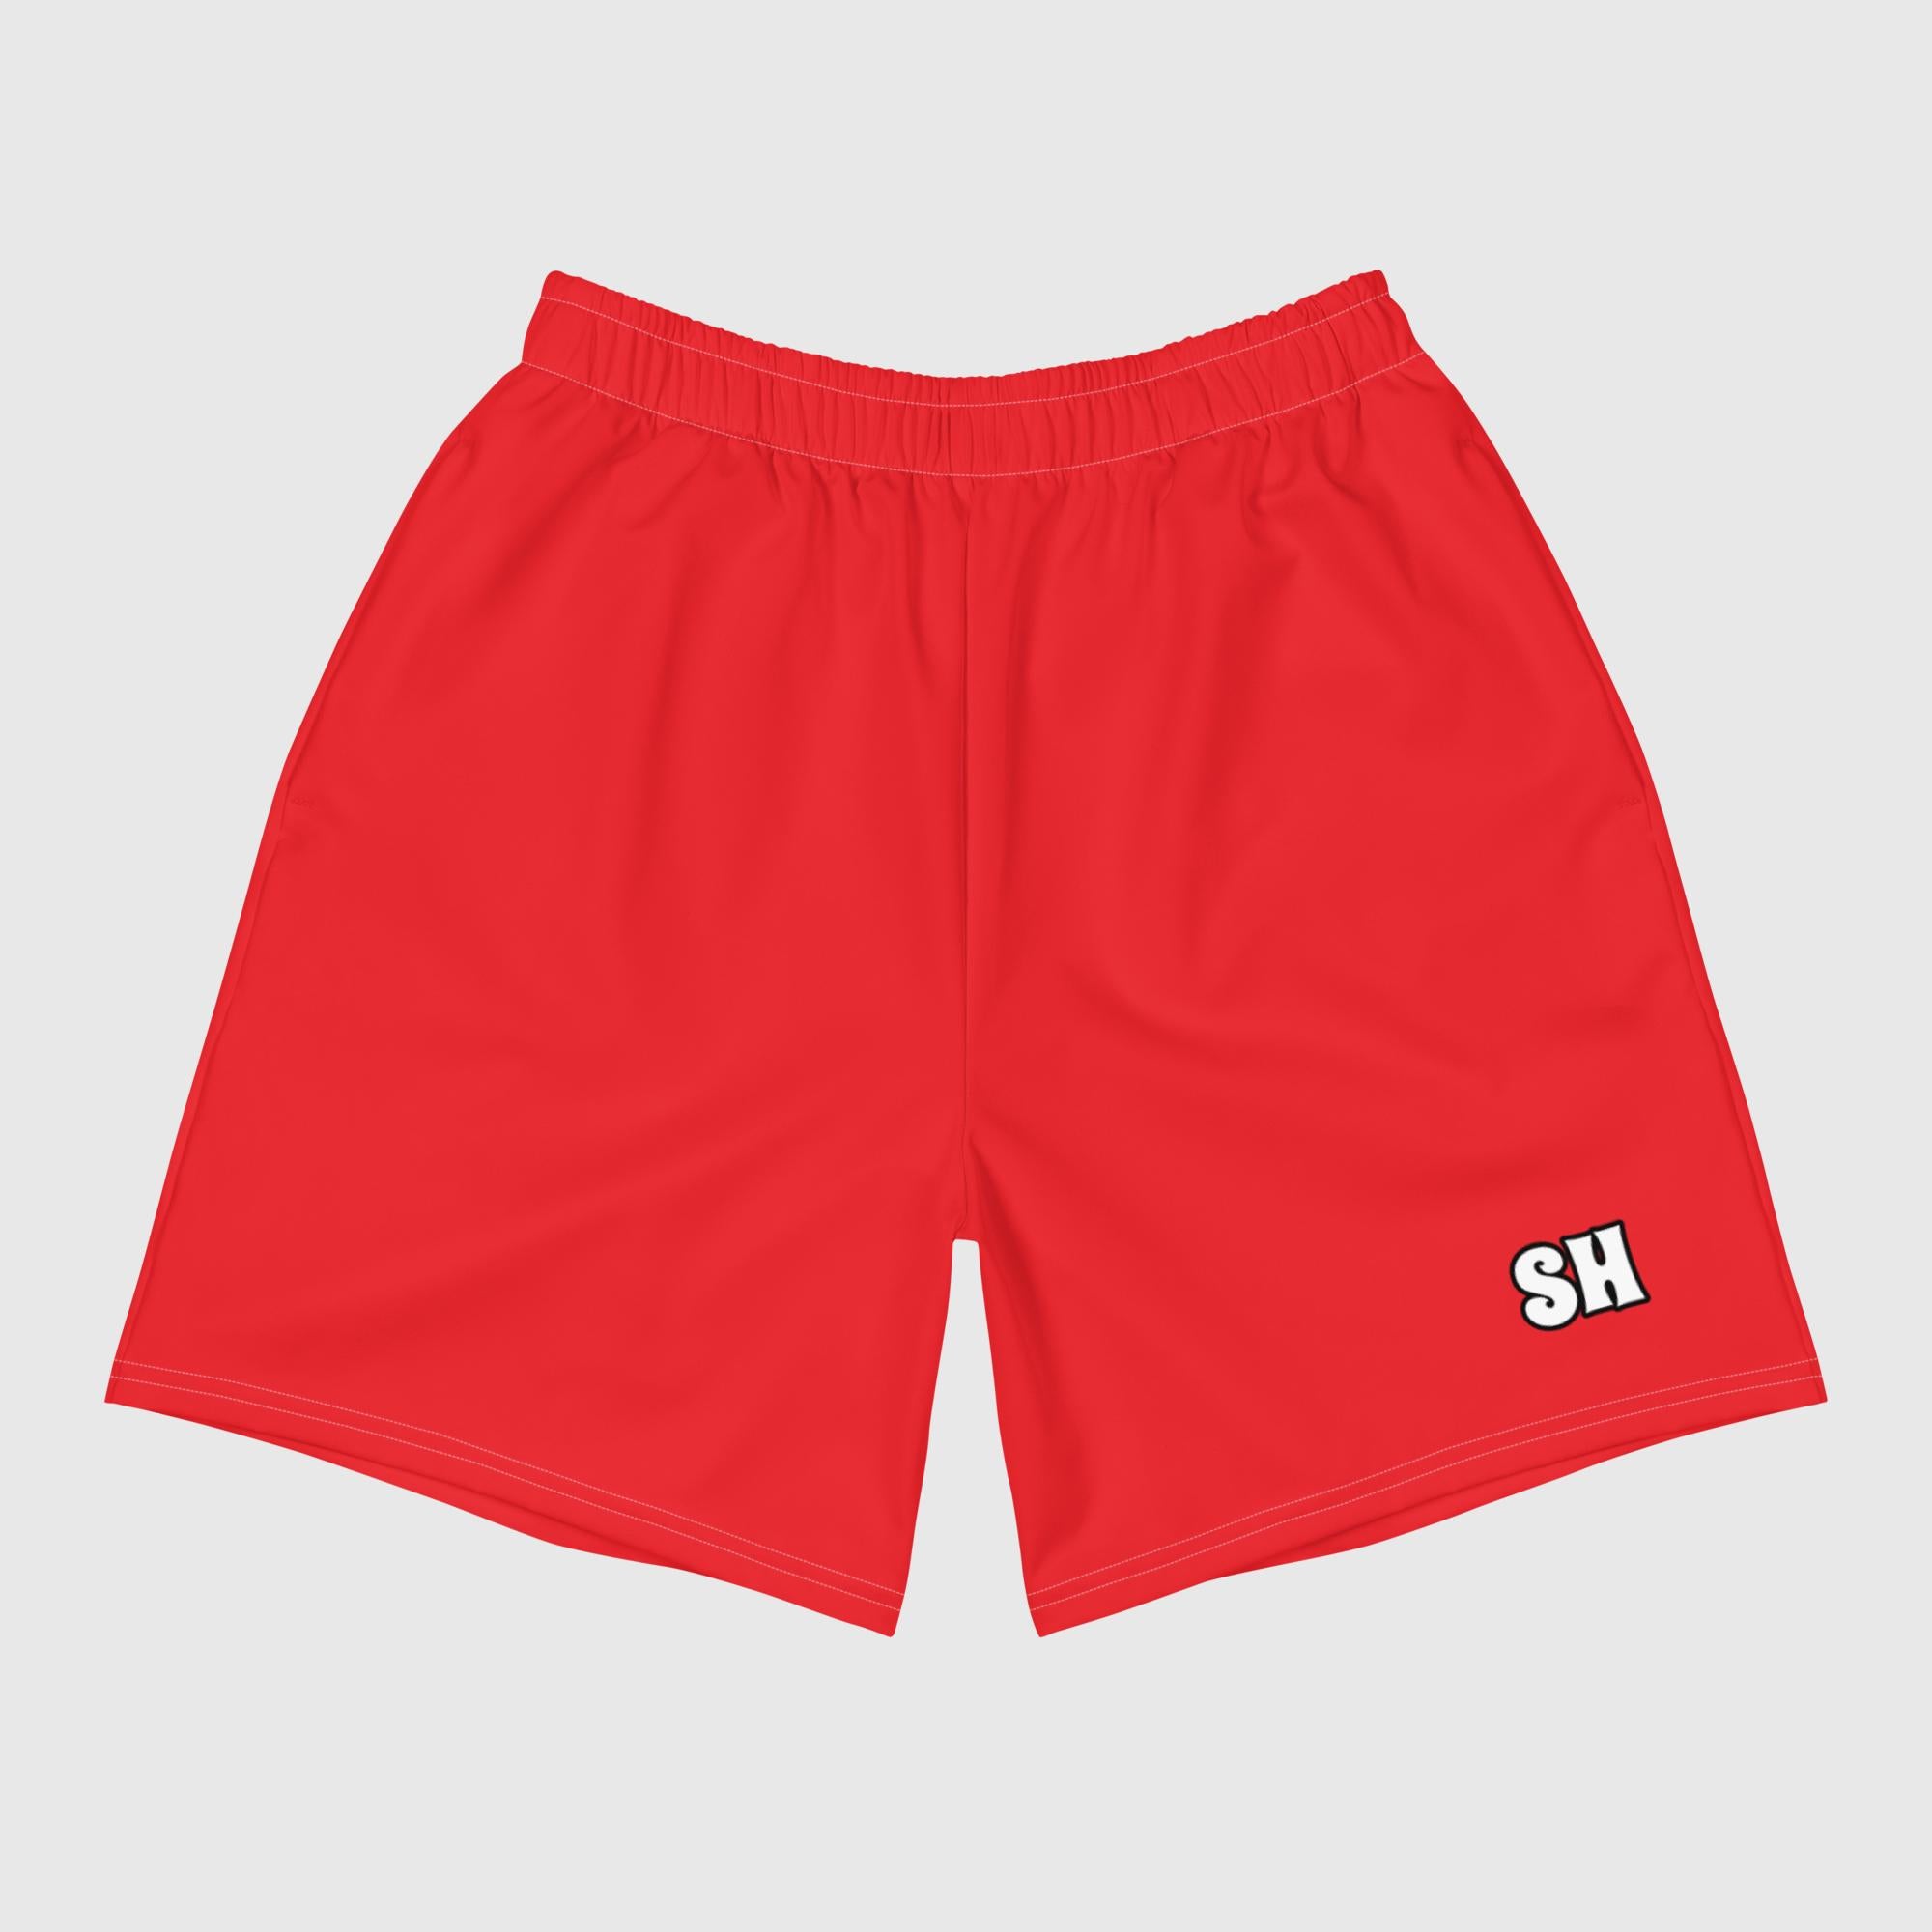 Shorts deportivos reciclados para hombre - Rojo